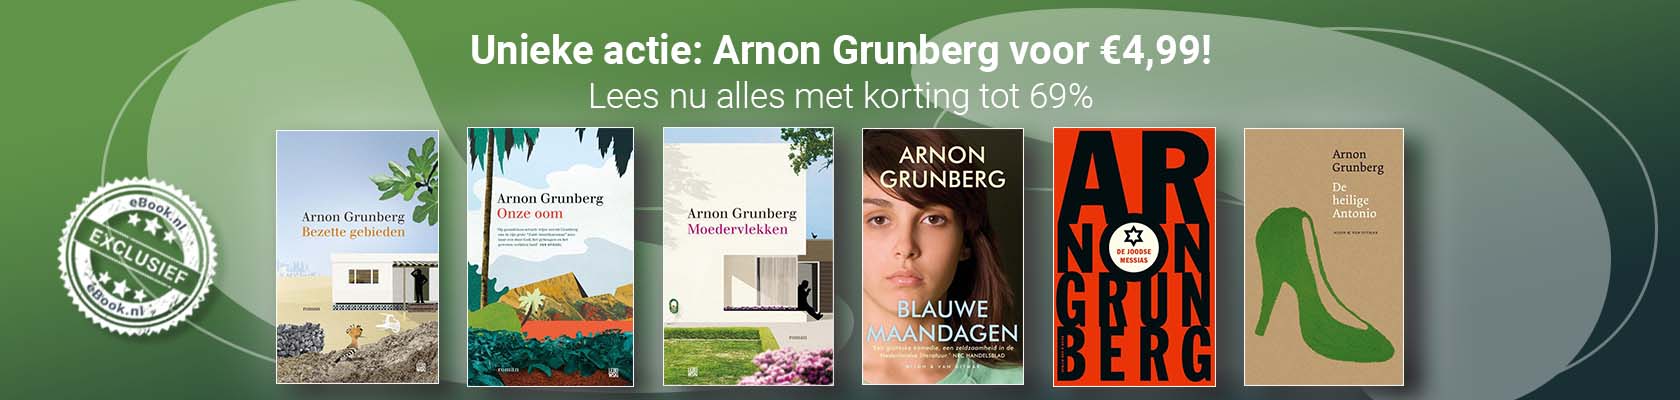 Unieke actie: Arnon Grunberg voor €4,99